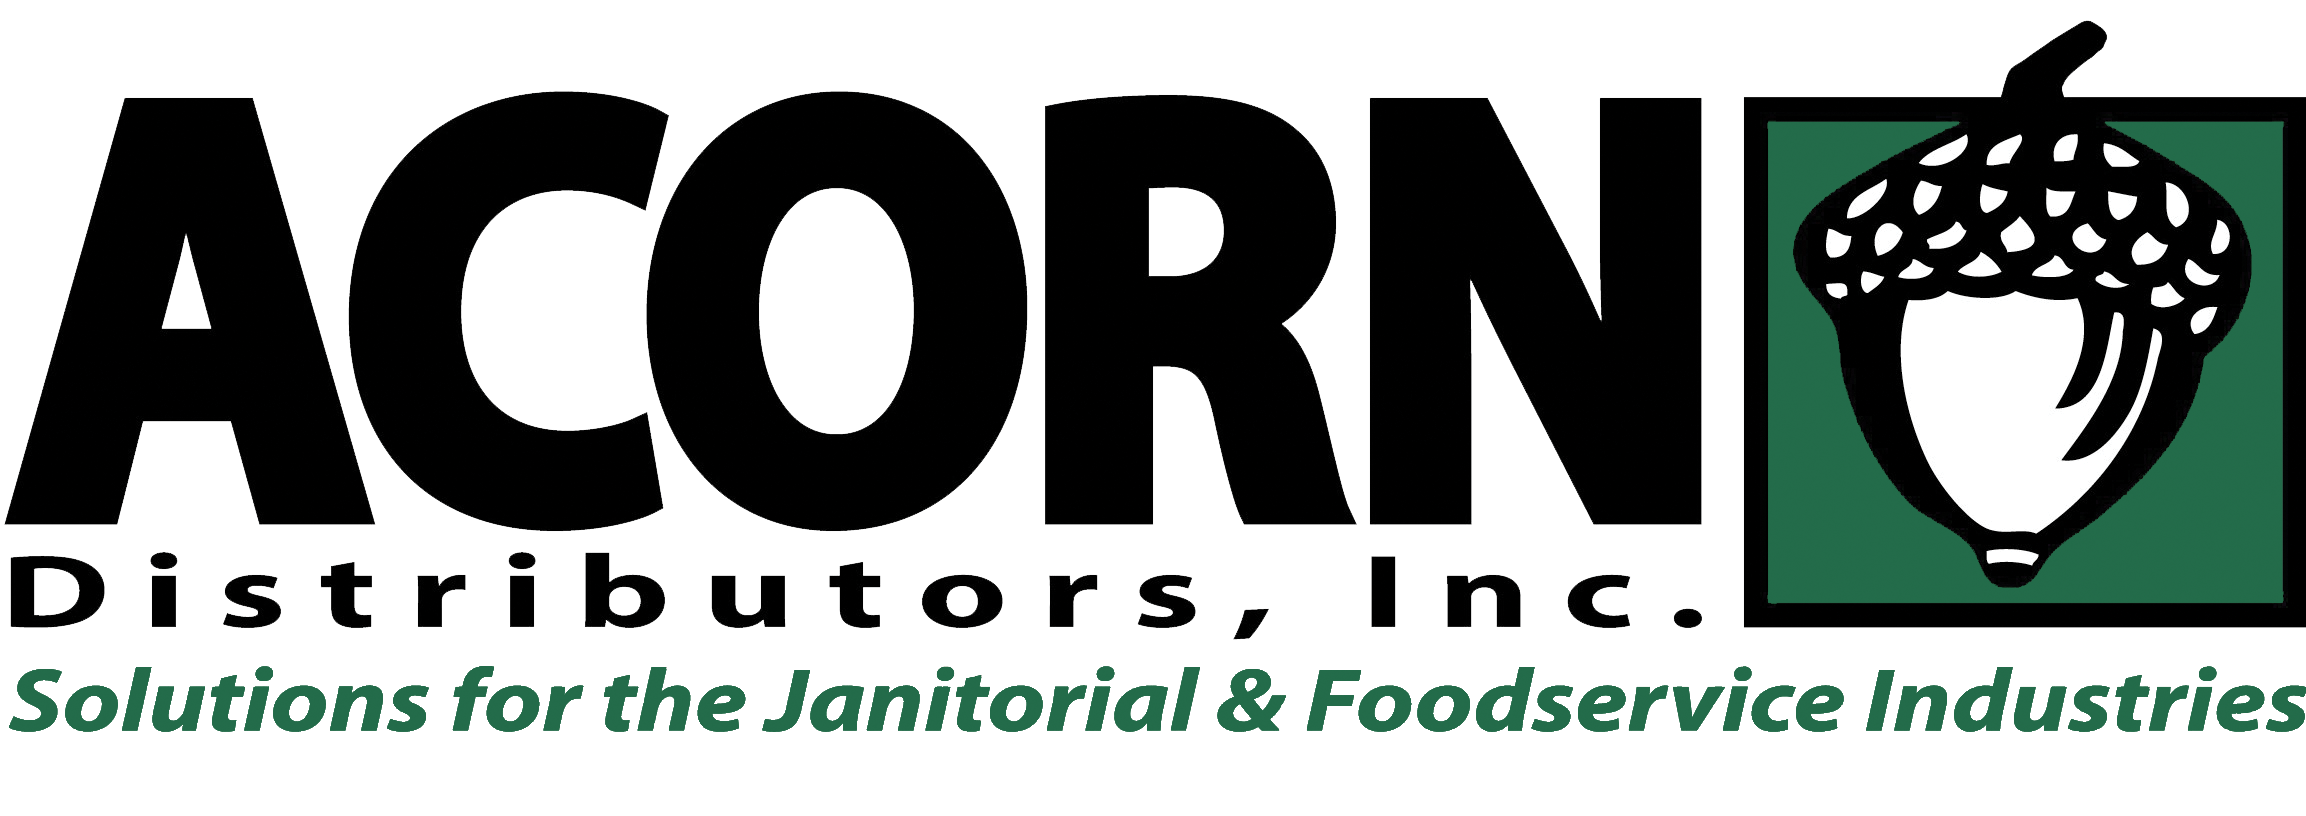 Acorn Distributors Inc. logo